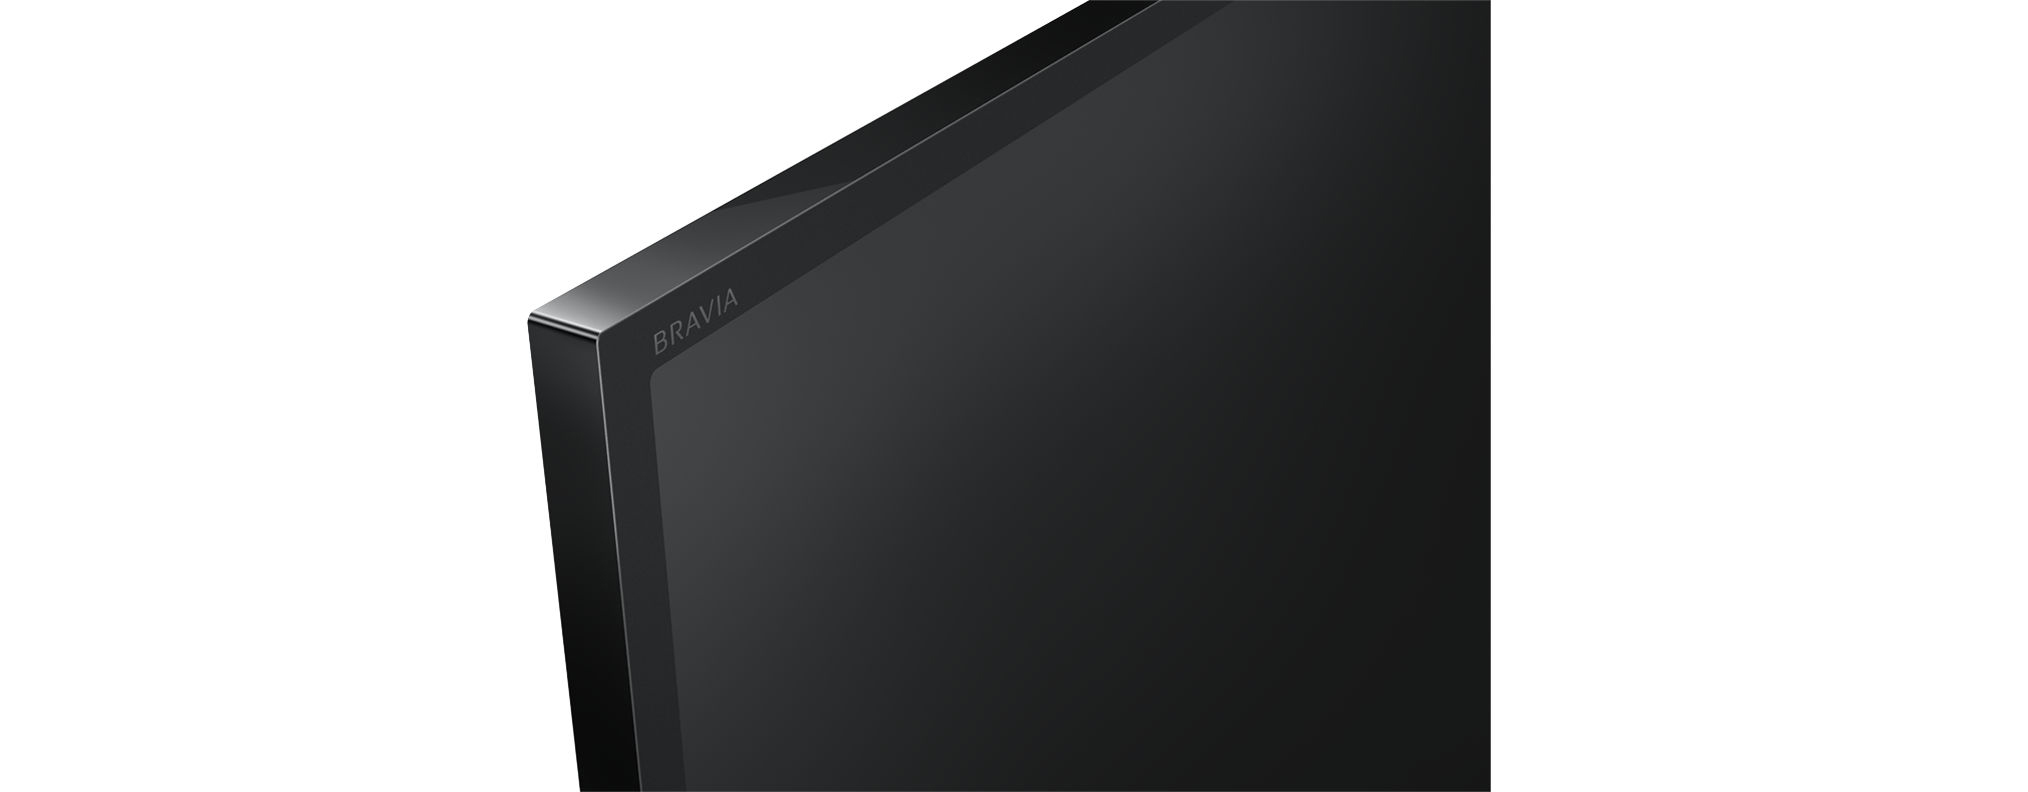 TV Zoll (Flat, Linux) / KDL-32W6605 32 cm, 80 HD-ready, SONY LED SMART TV,